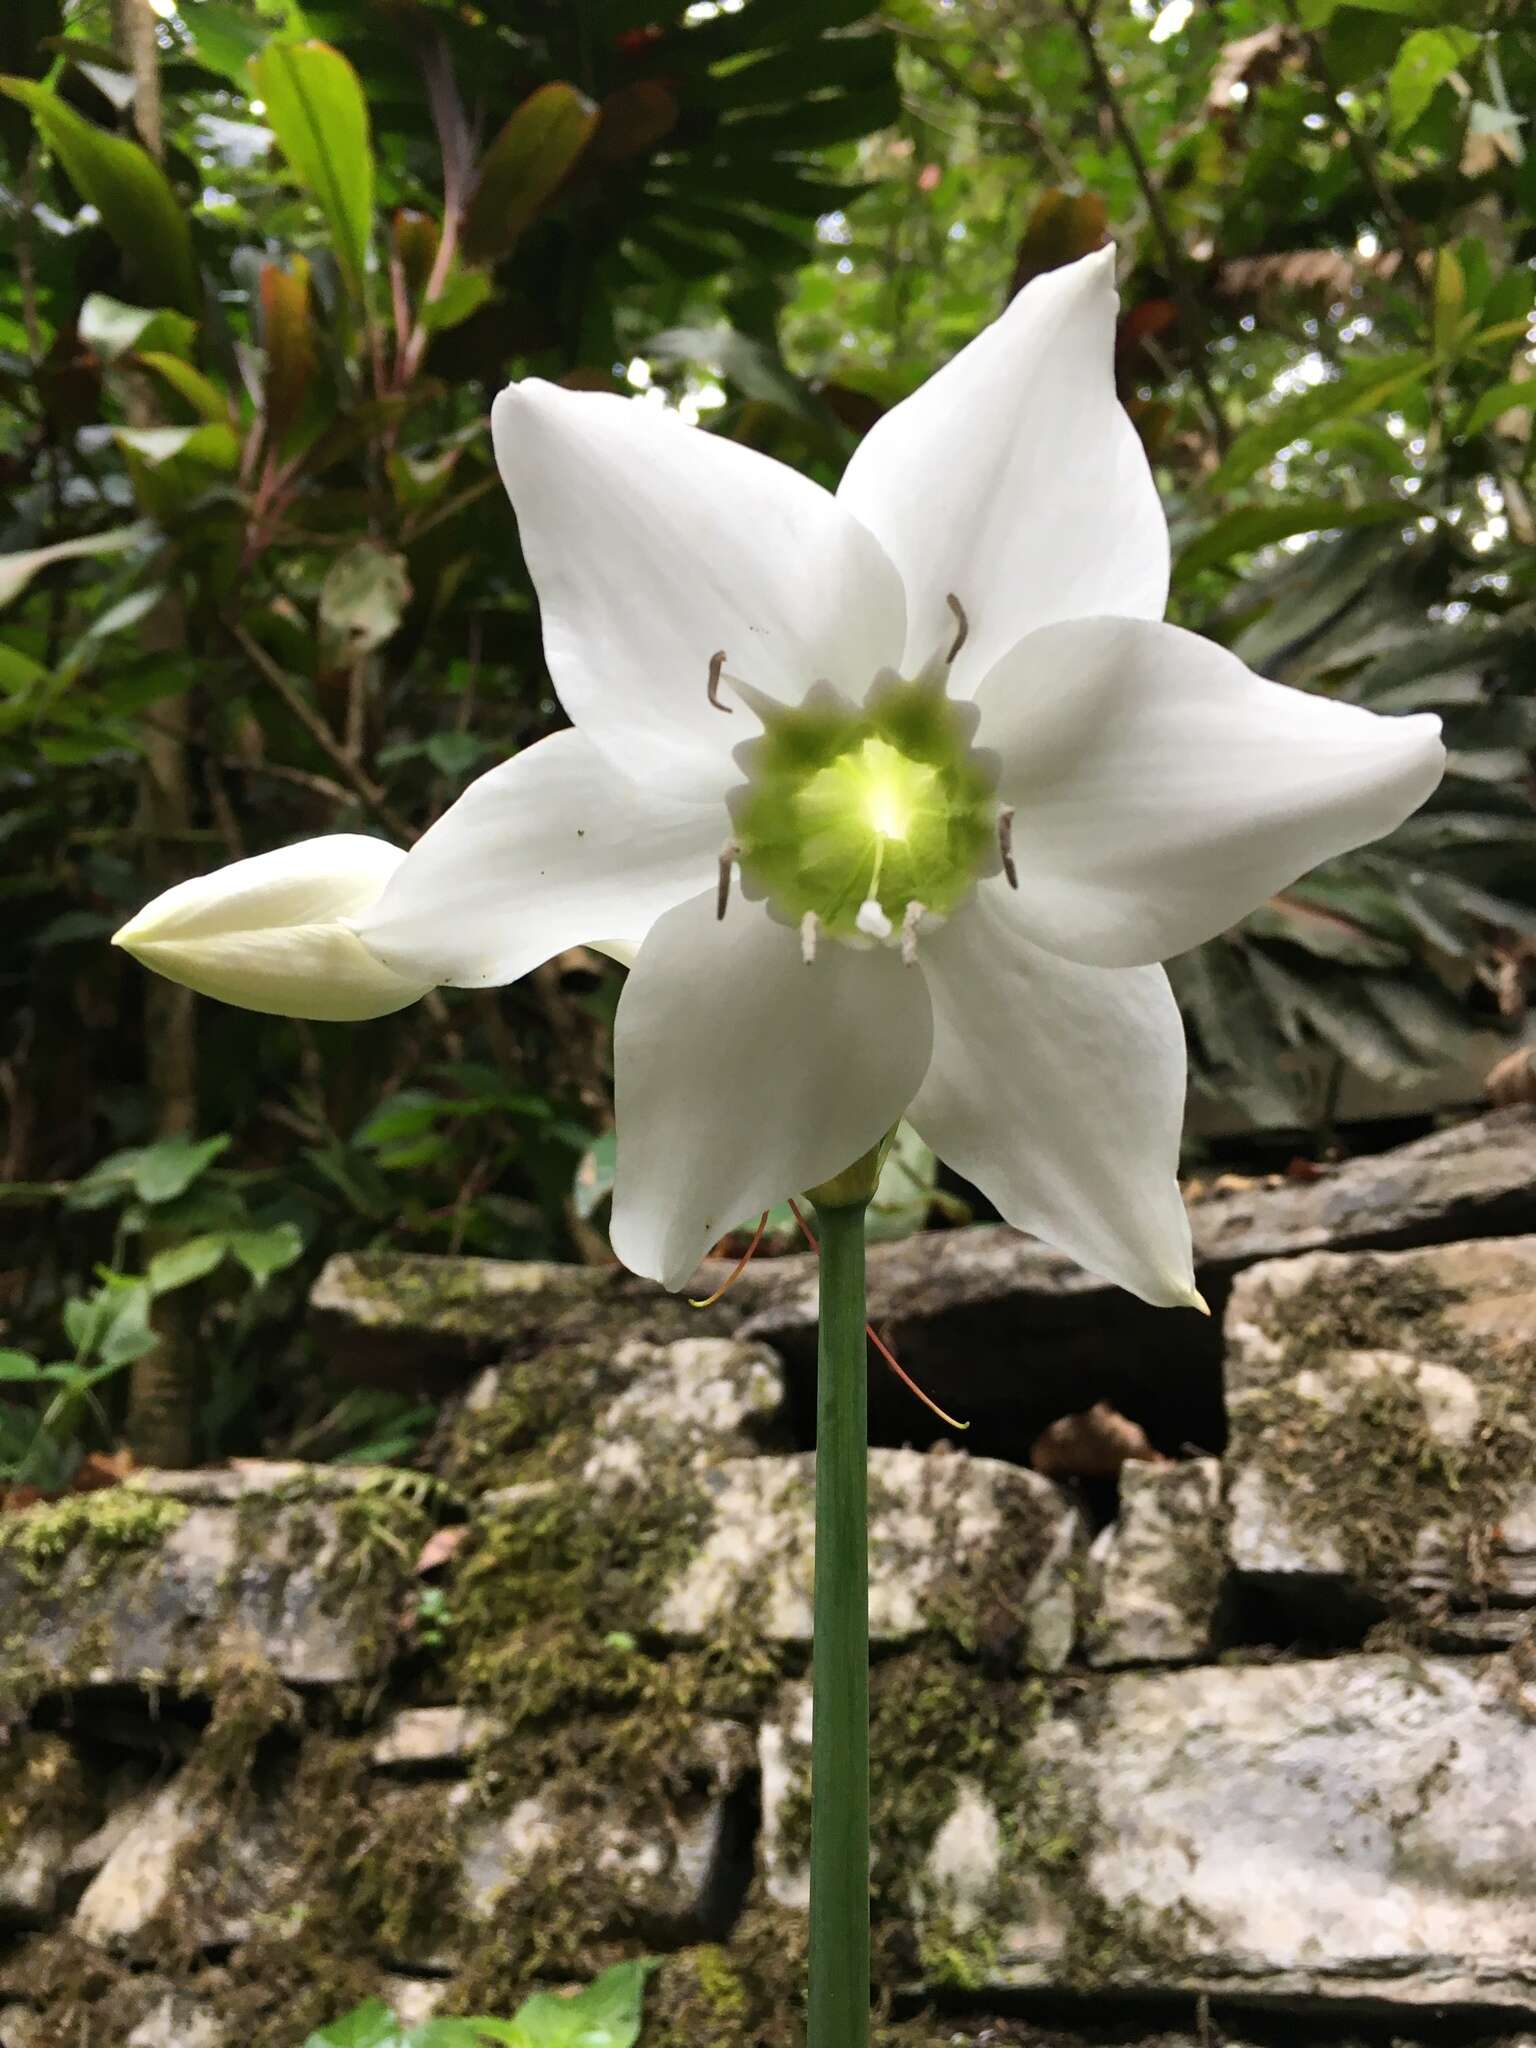 Image of Urceolina amazonica